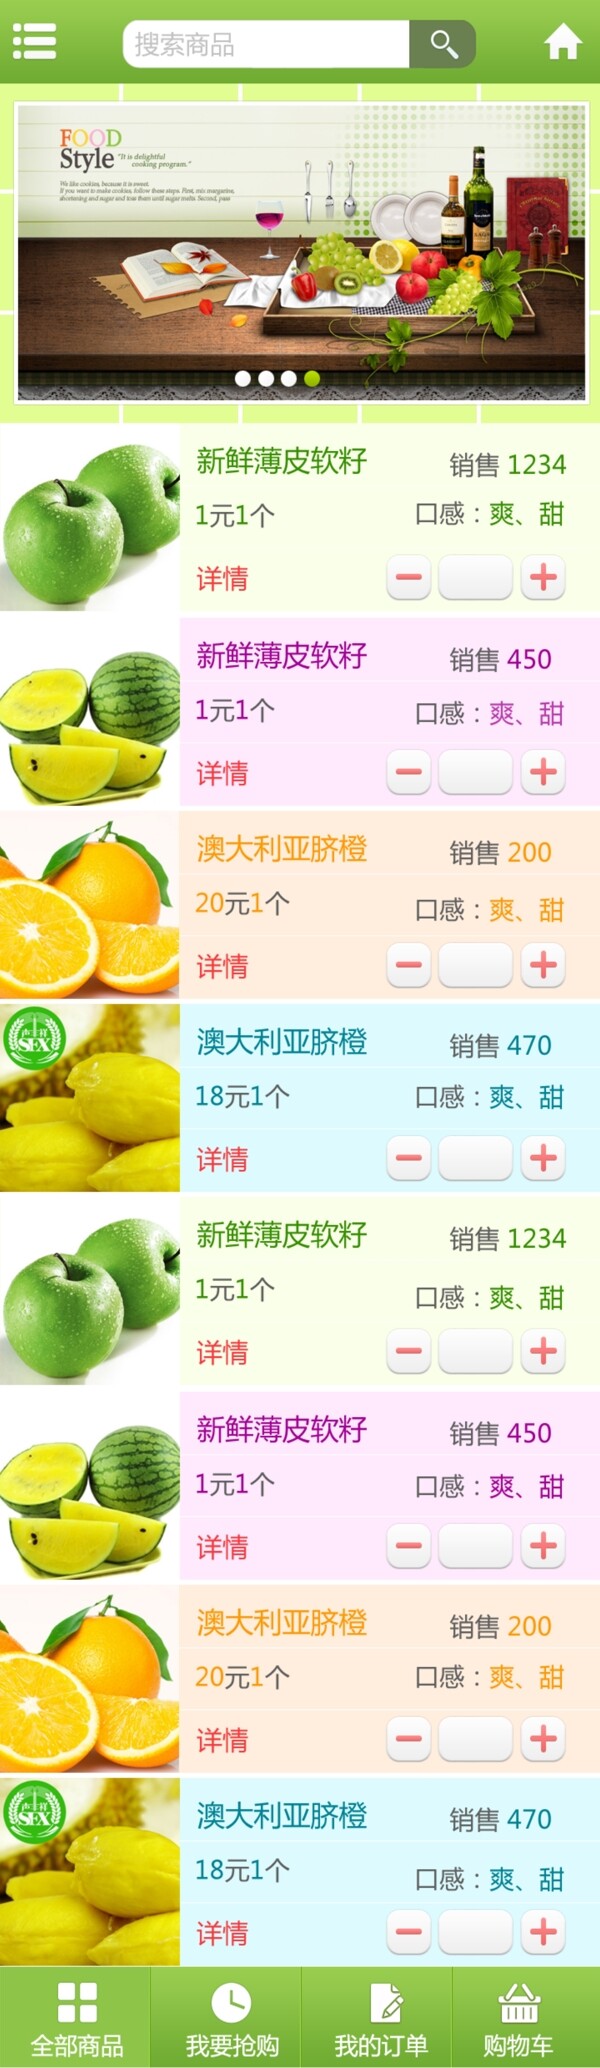 手机版水果列表页